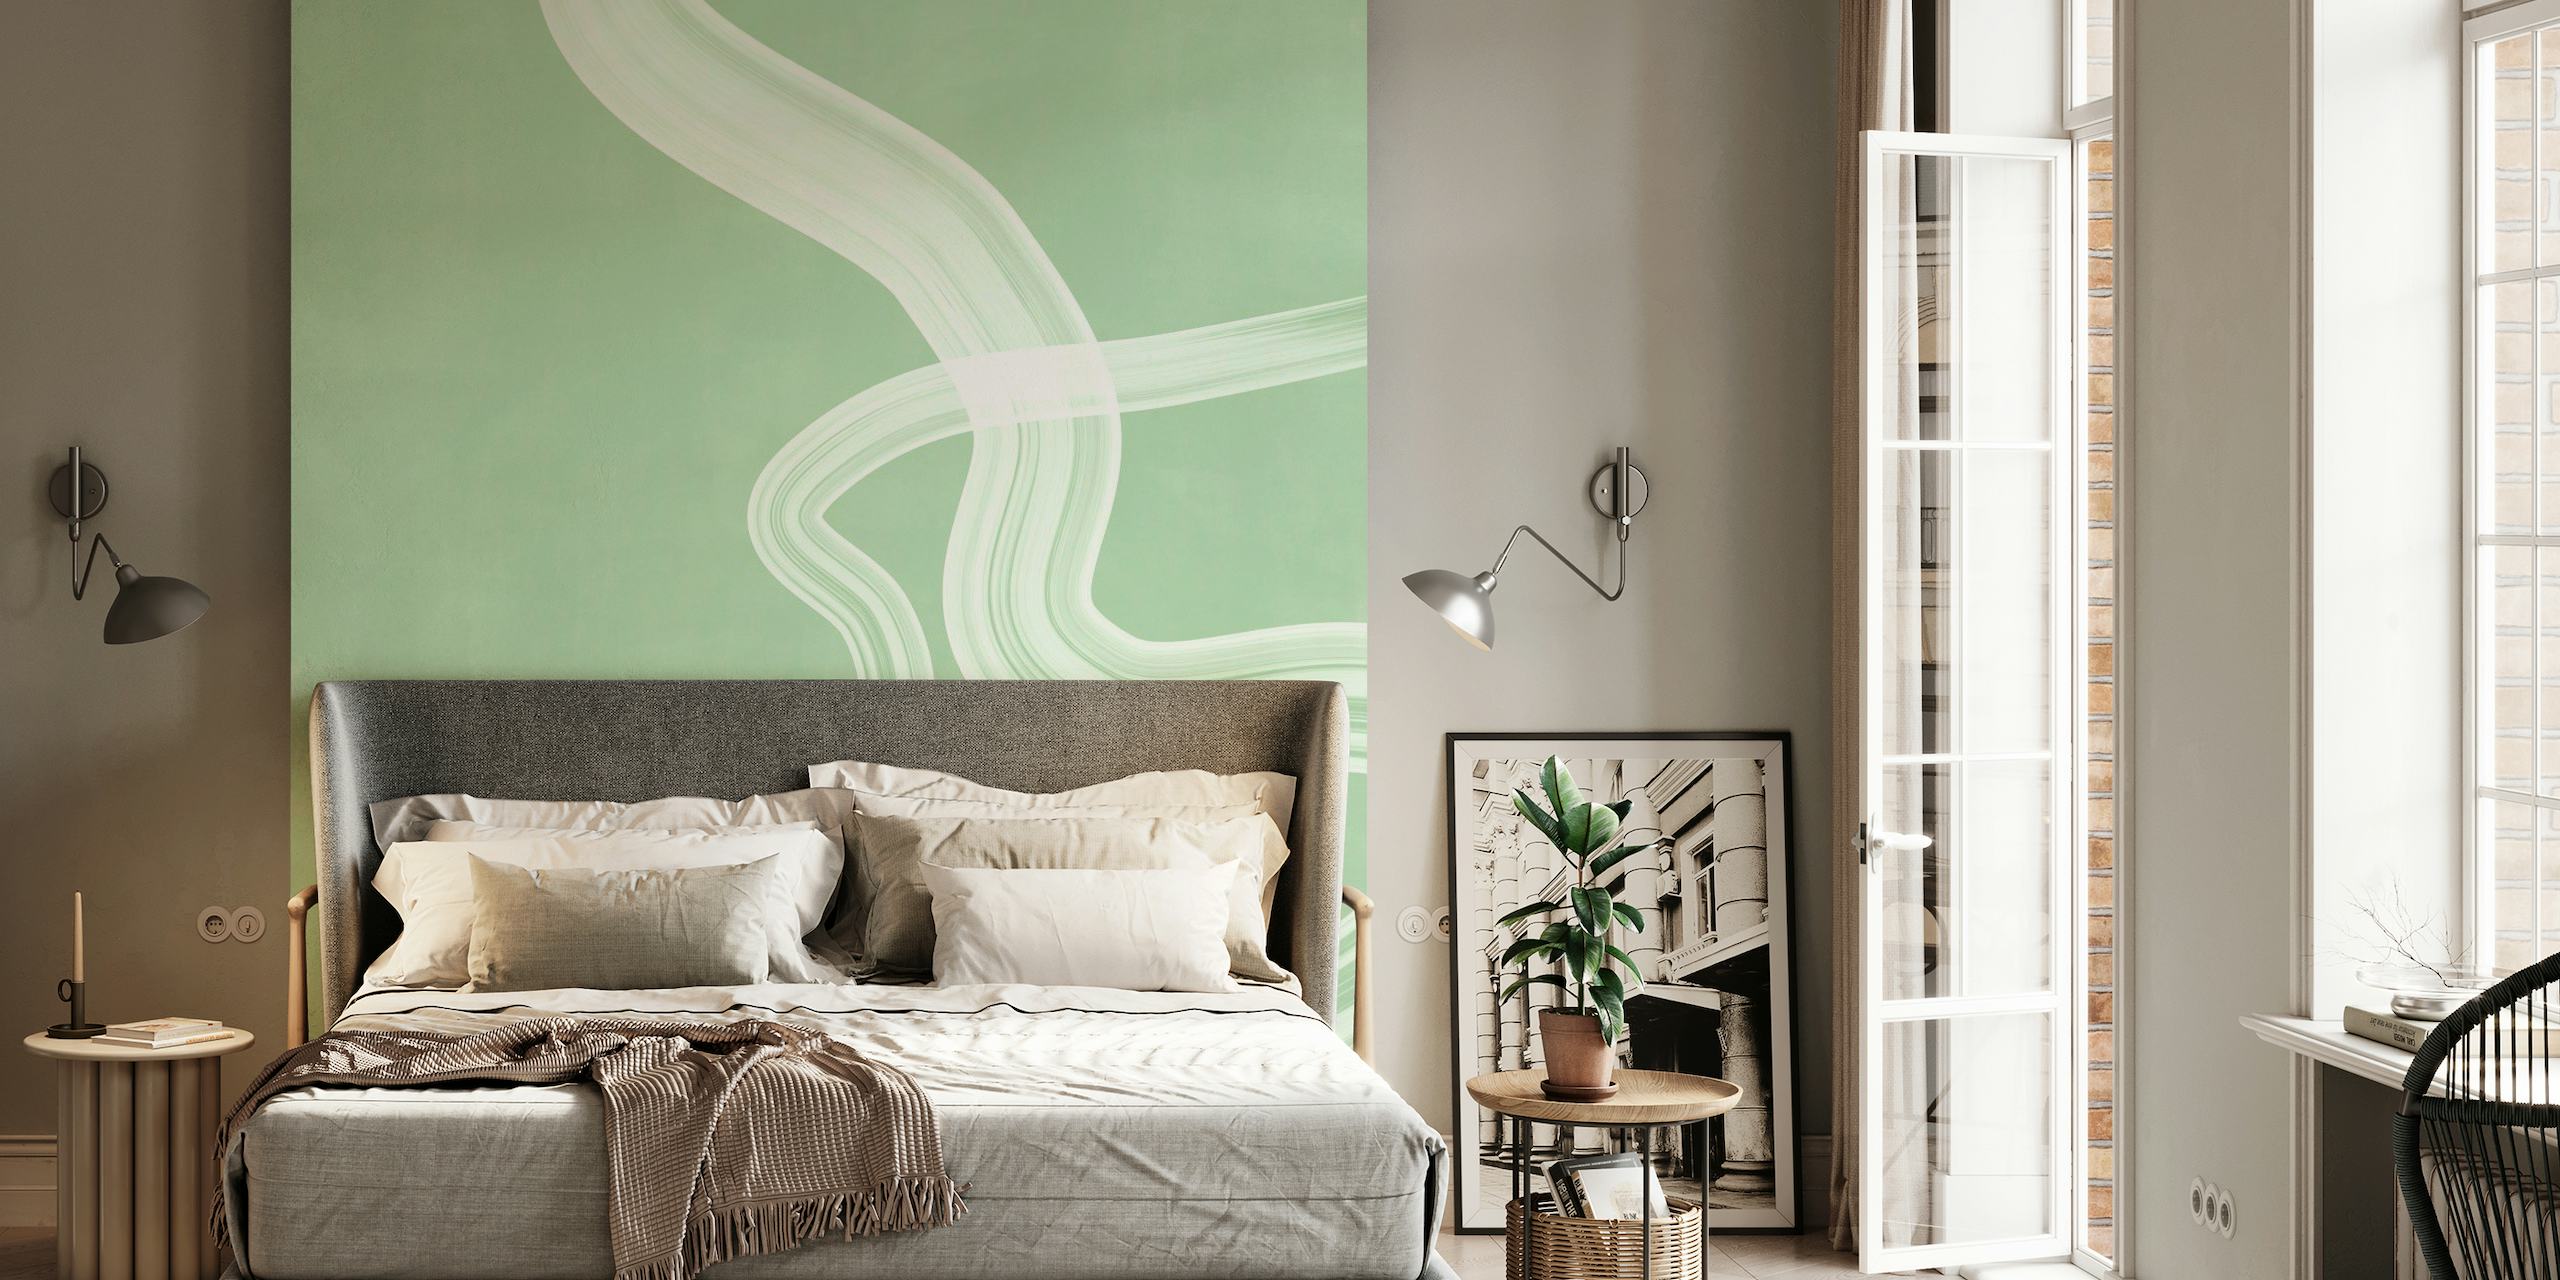 Mural de parede verde suave com design abstrato de linhas onduladas